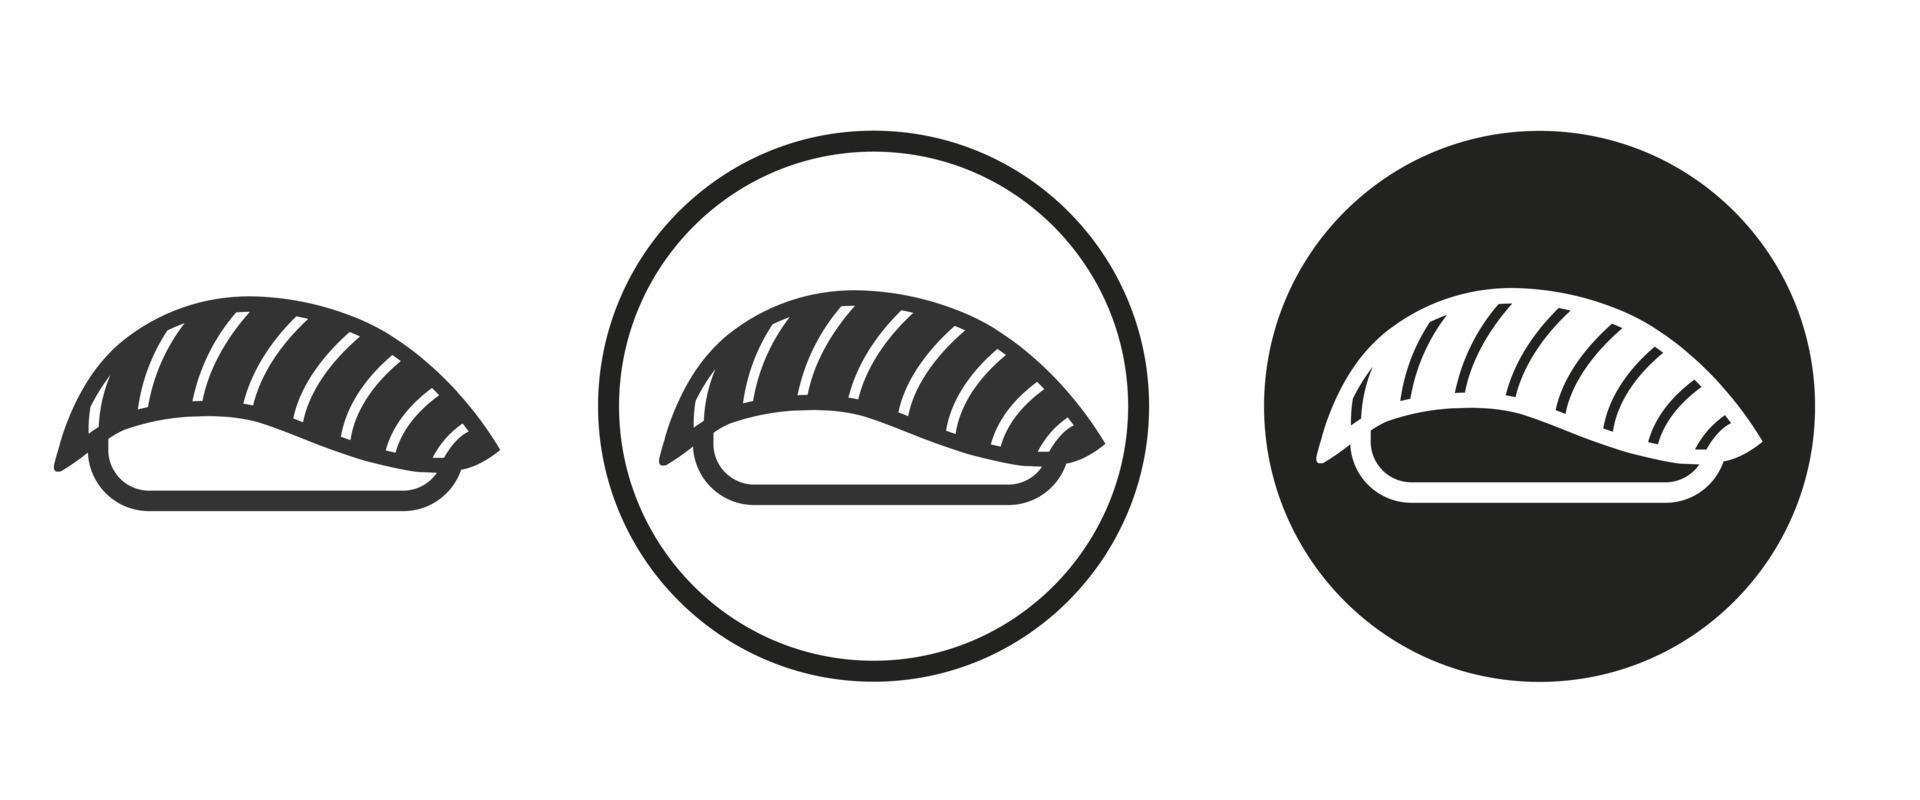 icono de sushi. conjunto de iconos web. colección de iconos. ilustración vectorial sencilla. vector